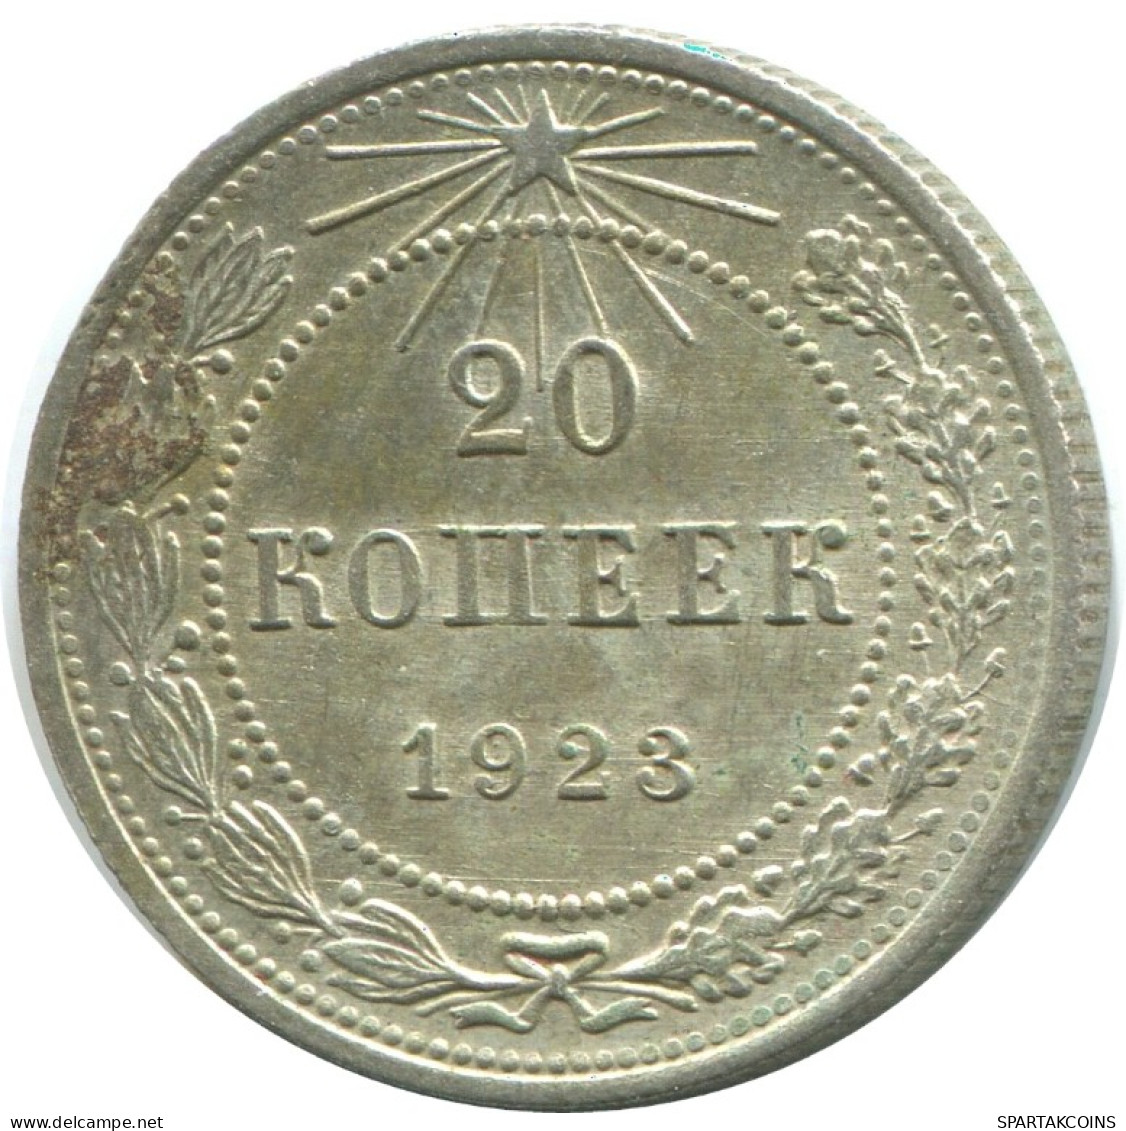 20 KOPEKS 1923 RUSSIA RSFSR SILVER Coin HIGH GRADE #AF469.4.U.A - Russland